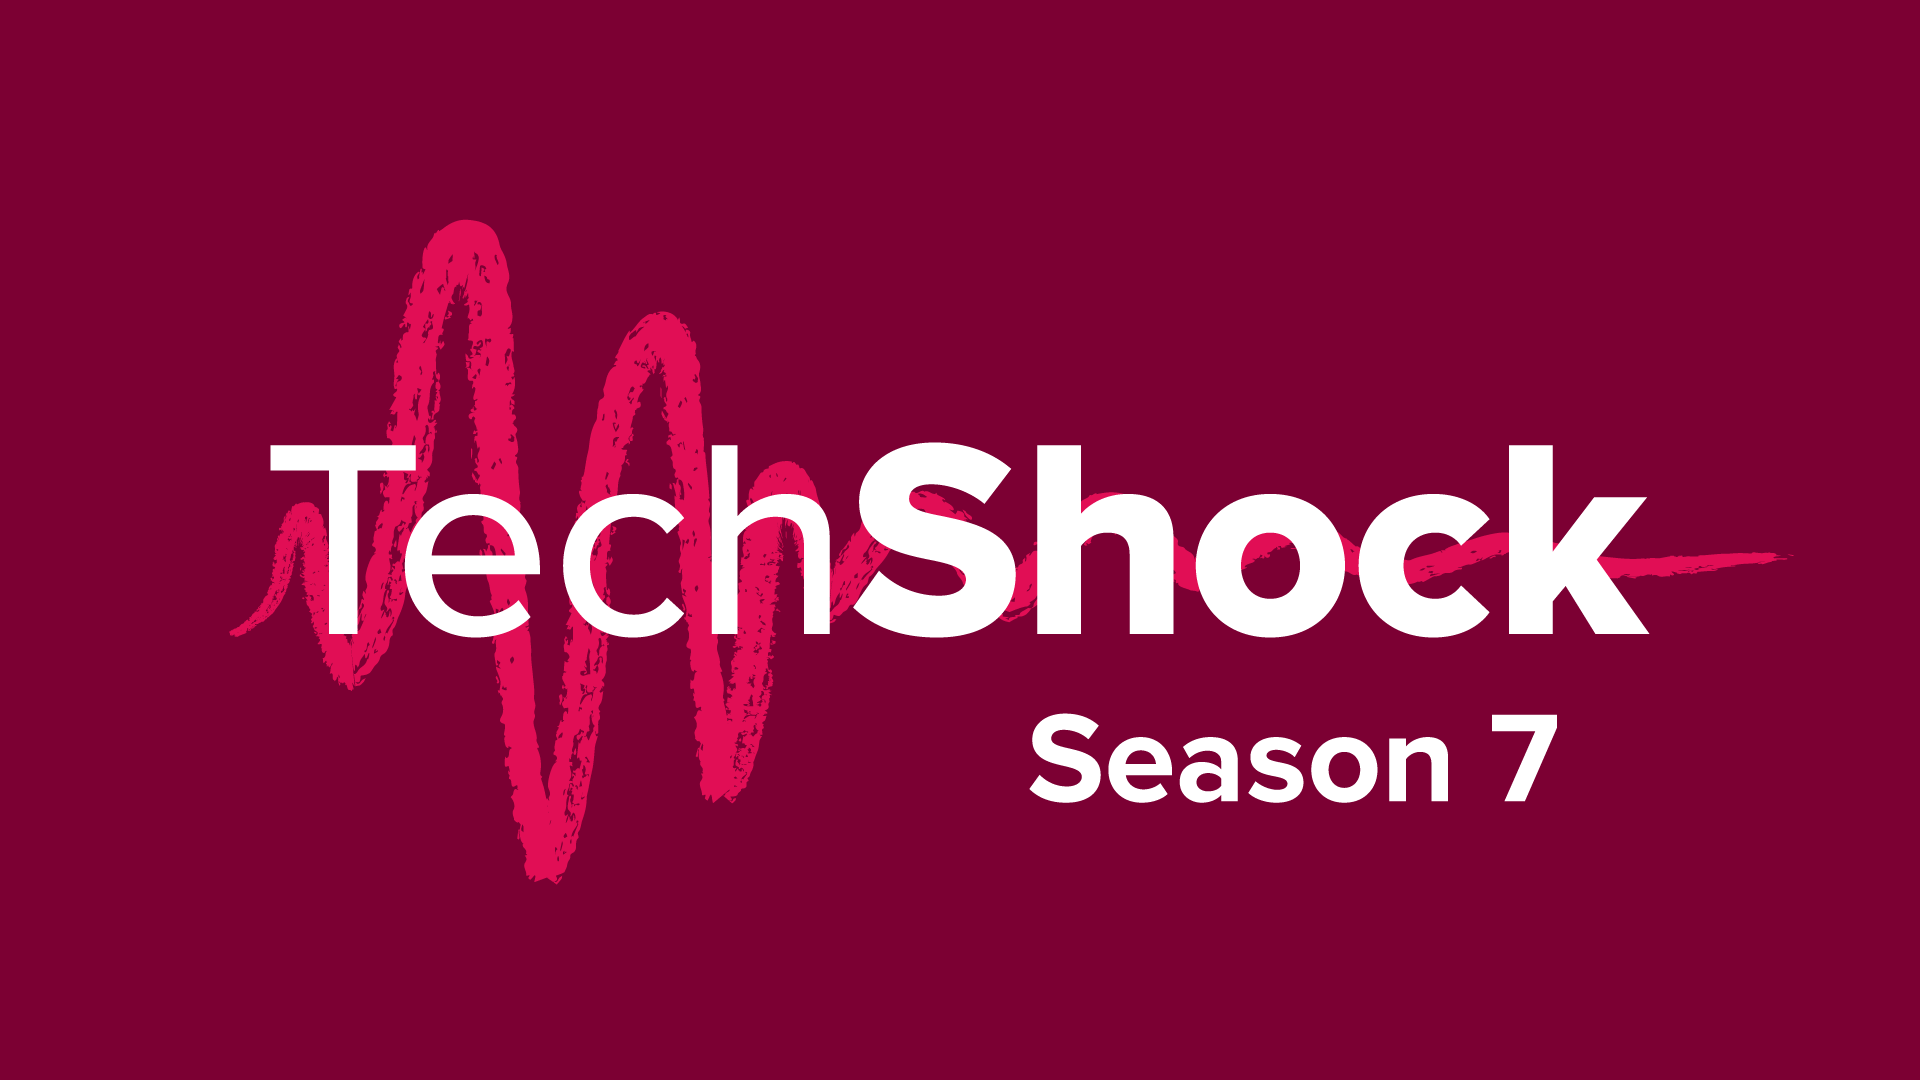 Tech shock season 7